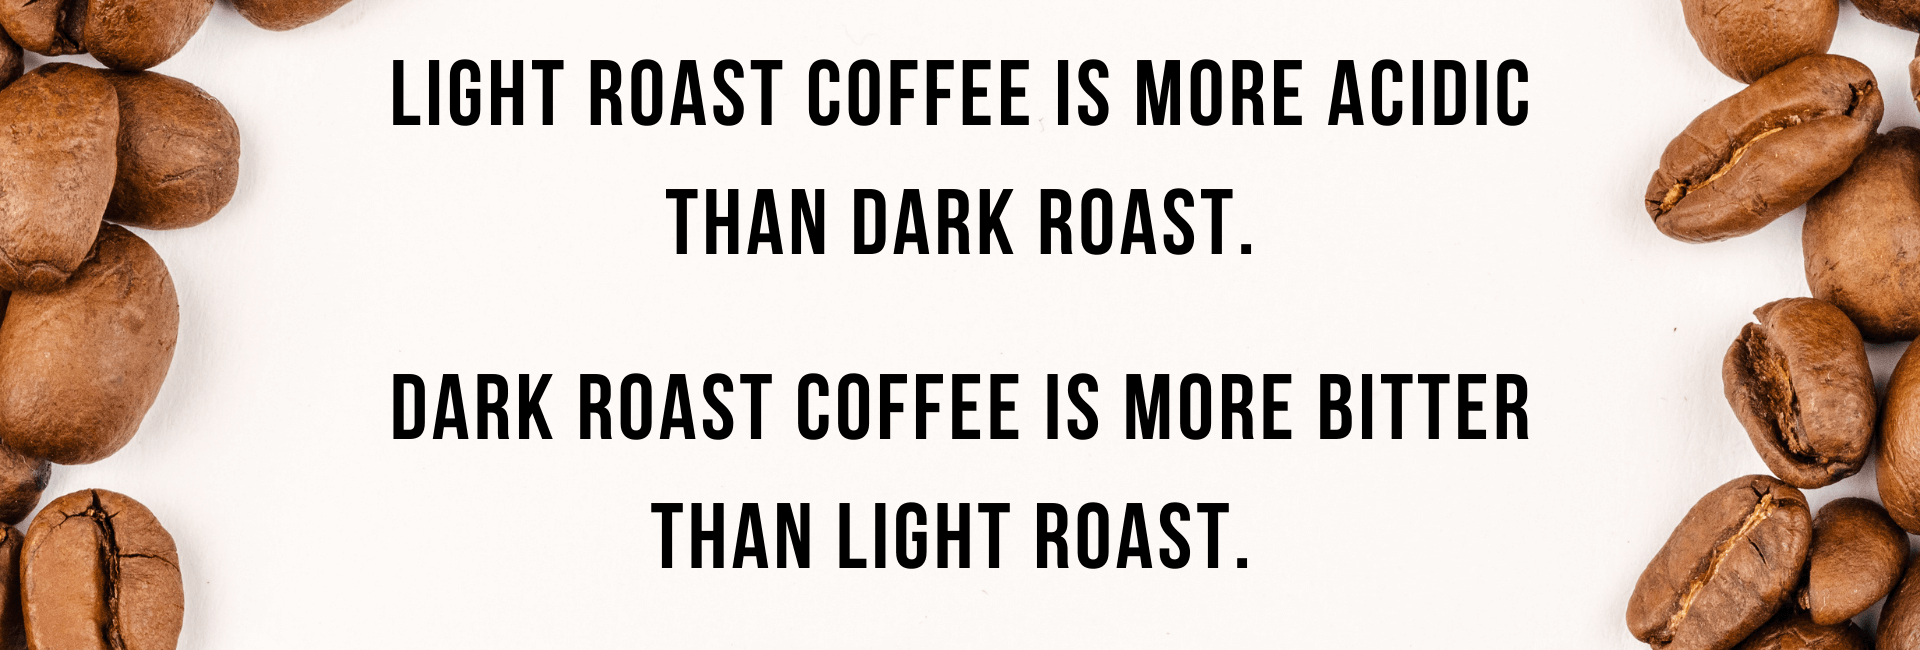 light roast is more acidic than dark roast but dark roast is more bitter than light roast